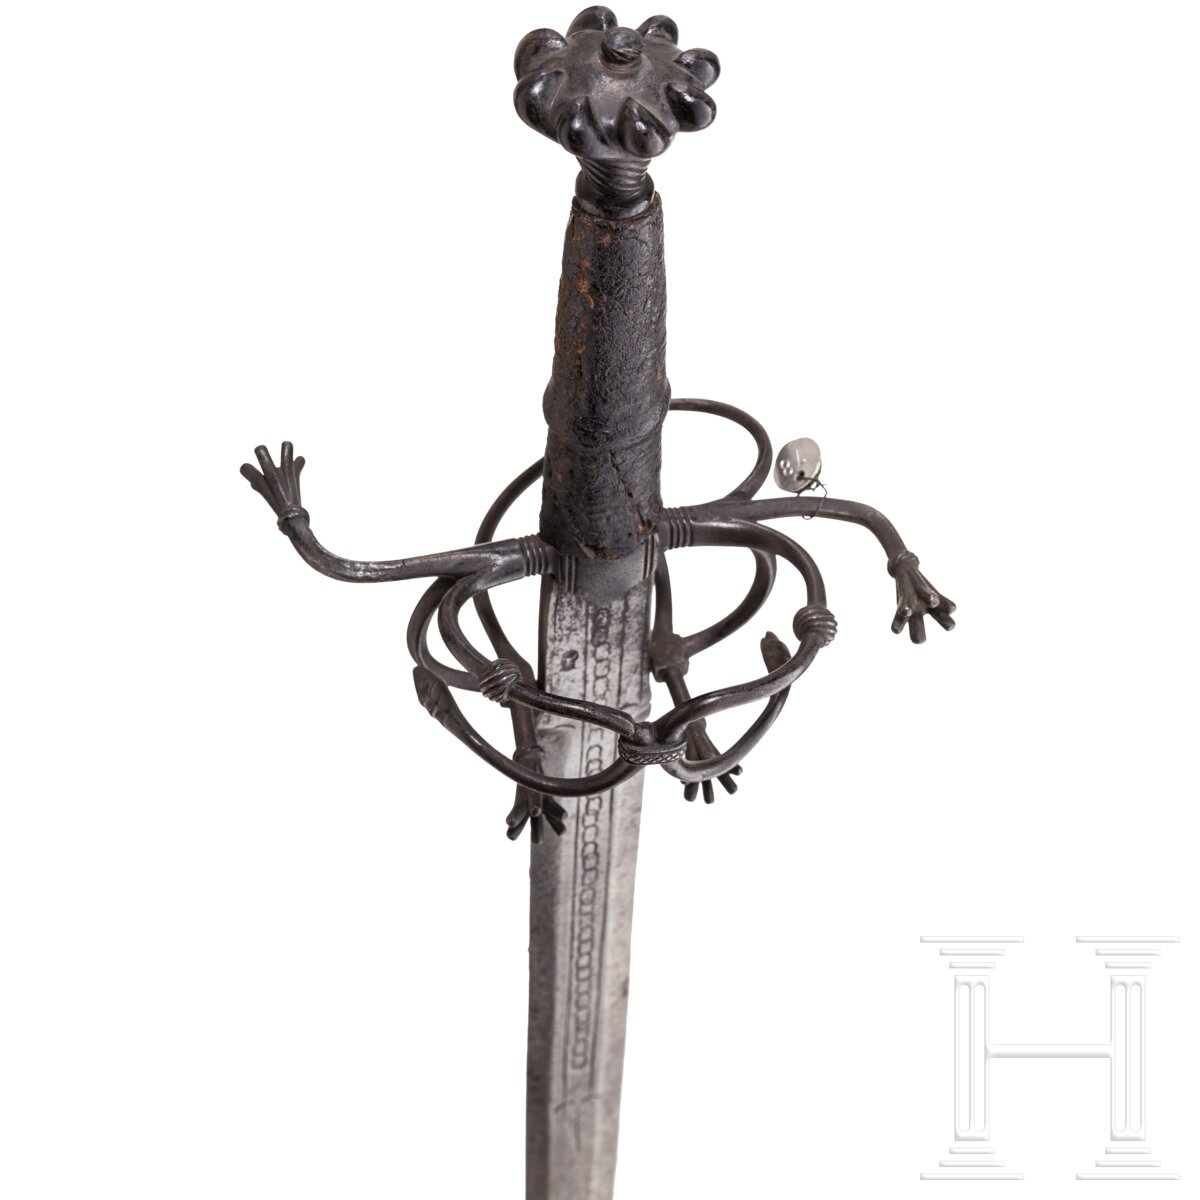 Ritterliches Schwert zu anderthalb Hand, süddeutsch, um 1530 - Image 3 of 9